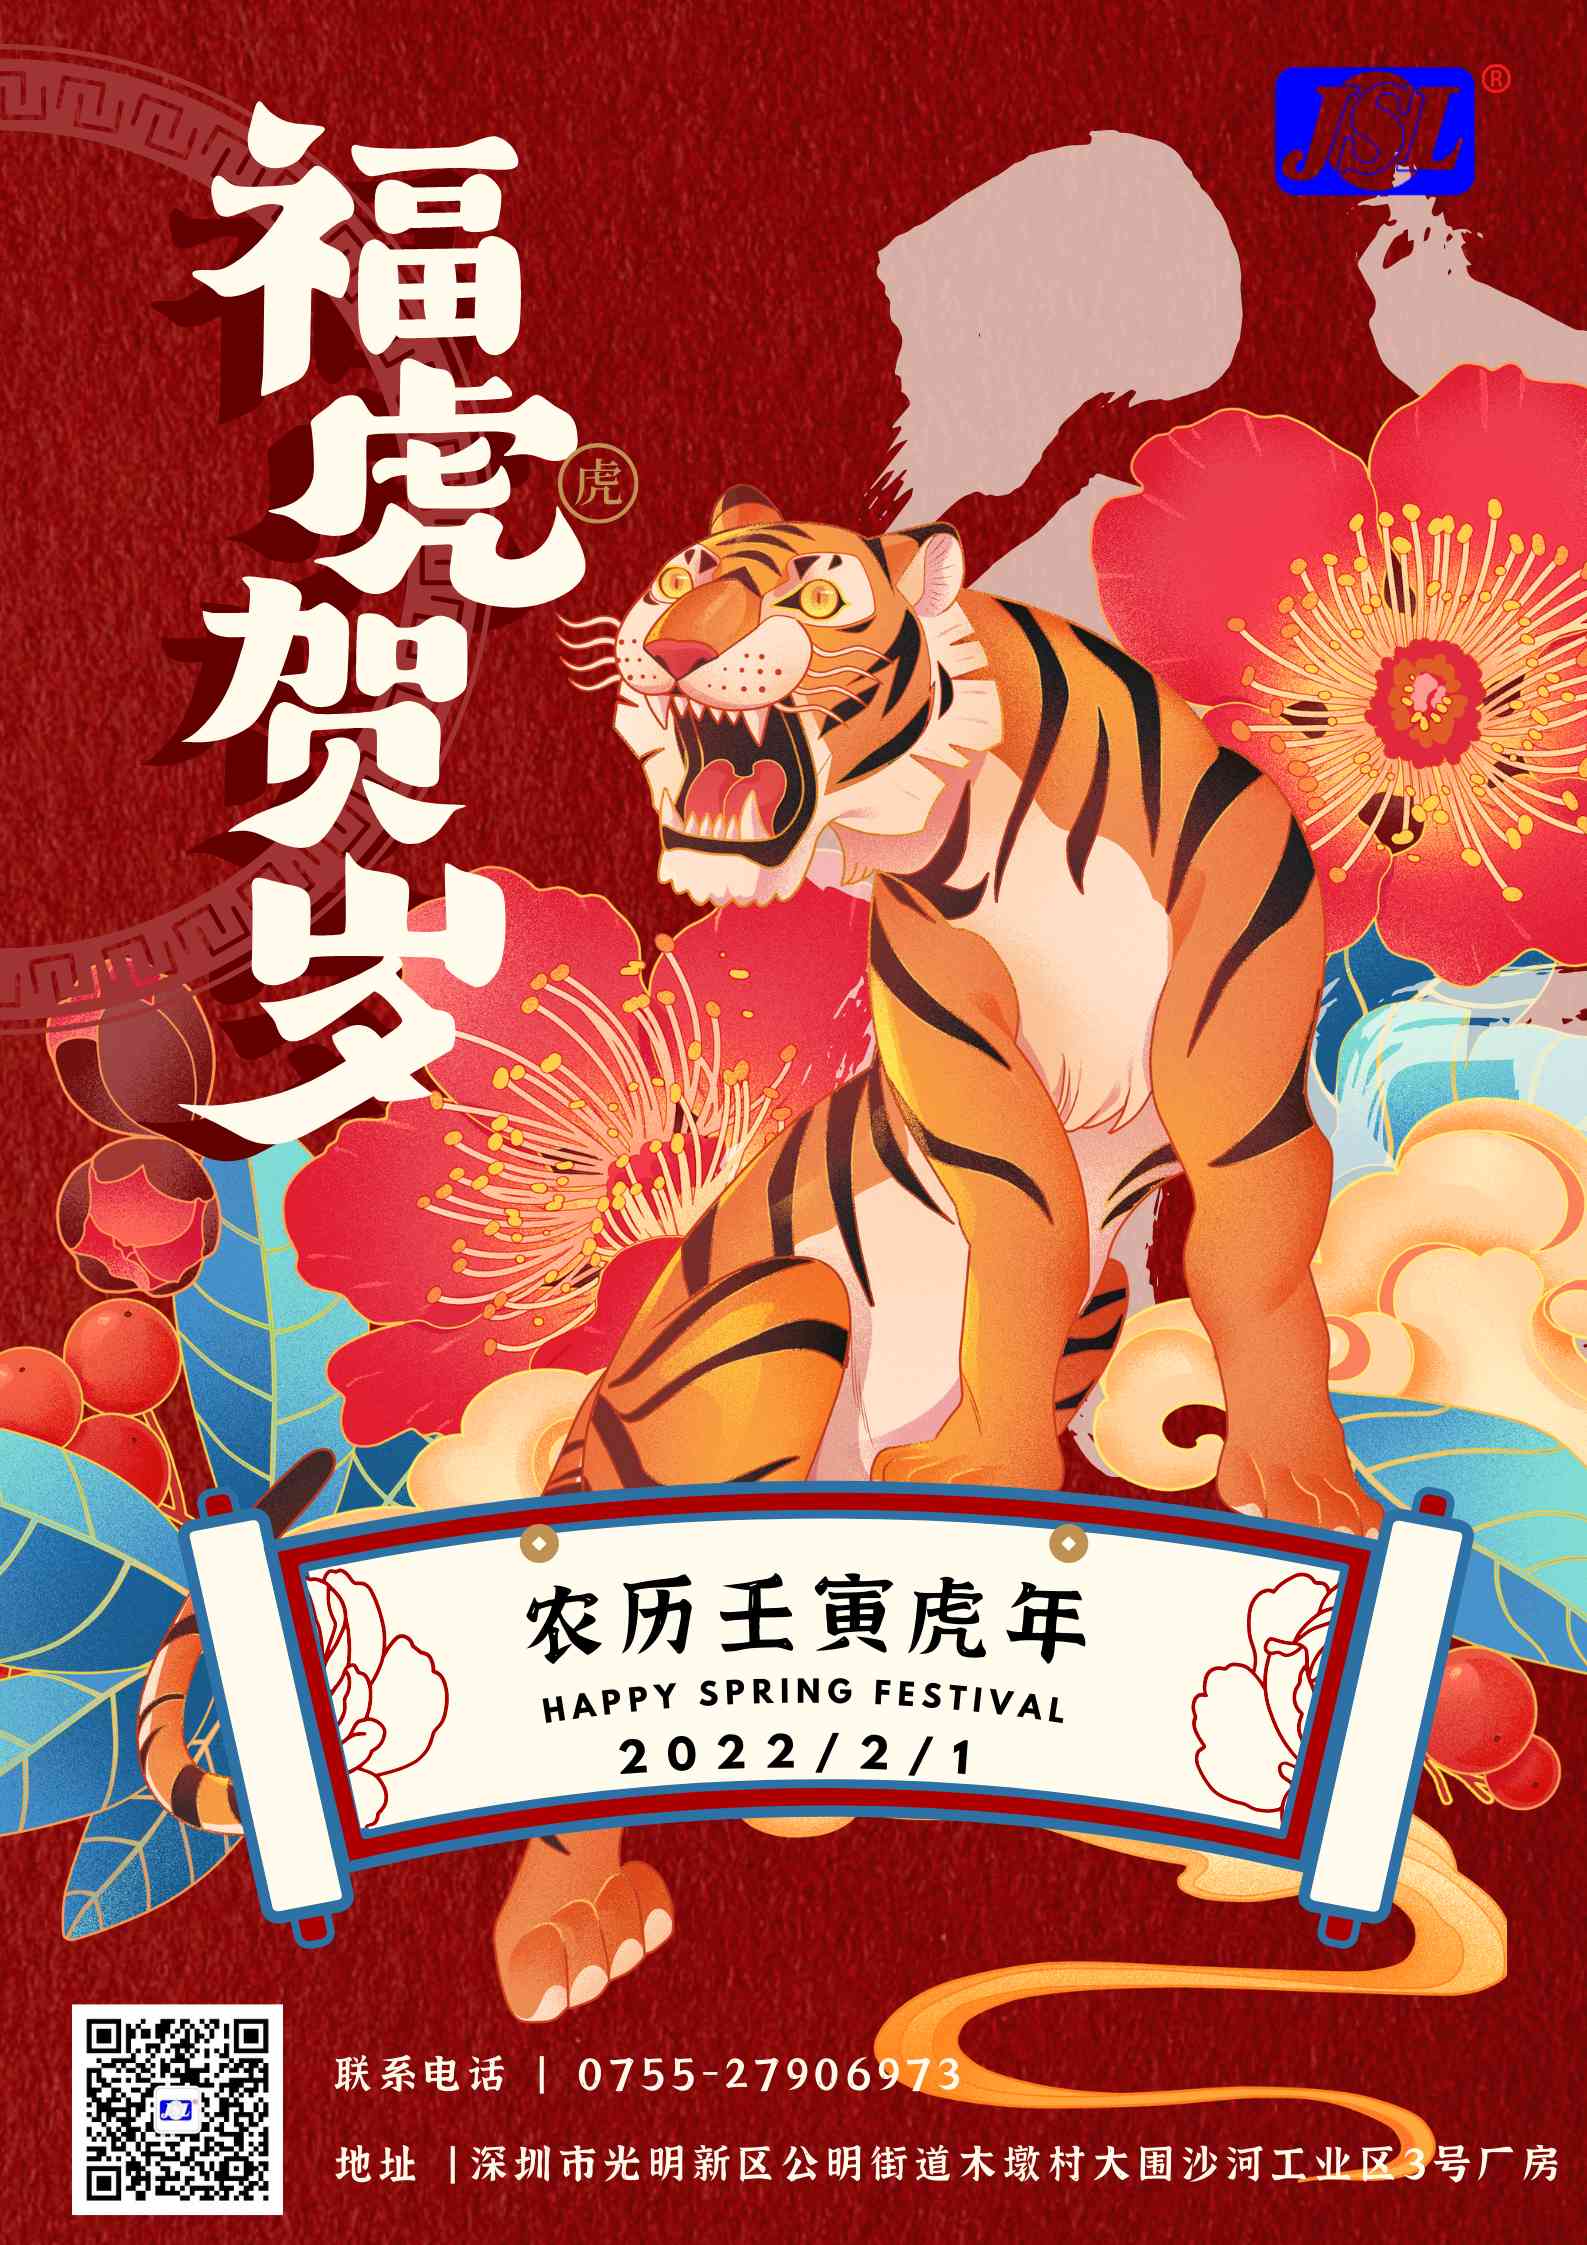 江山来祝广大客户2022虎年春节快乐！